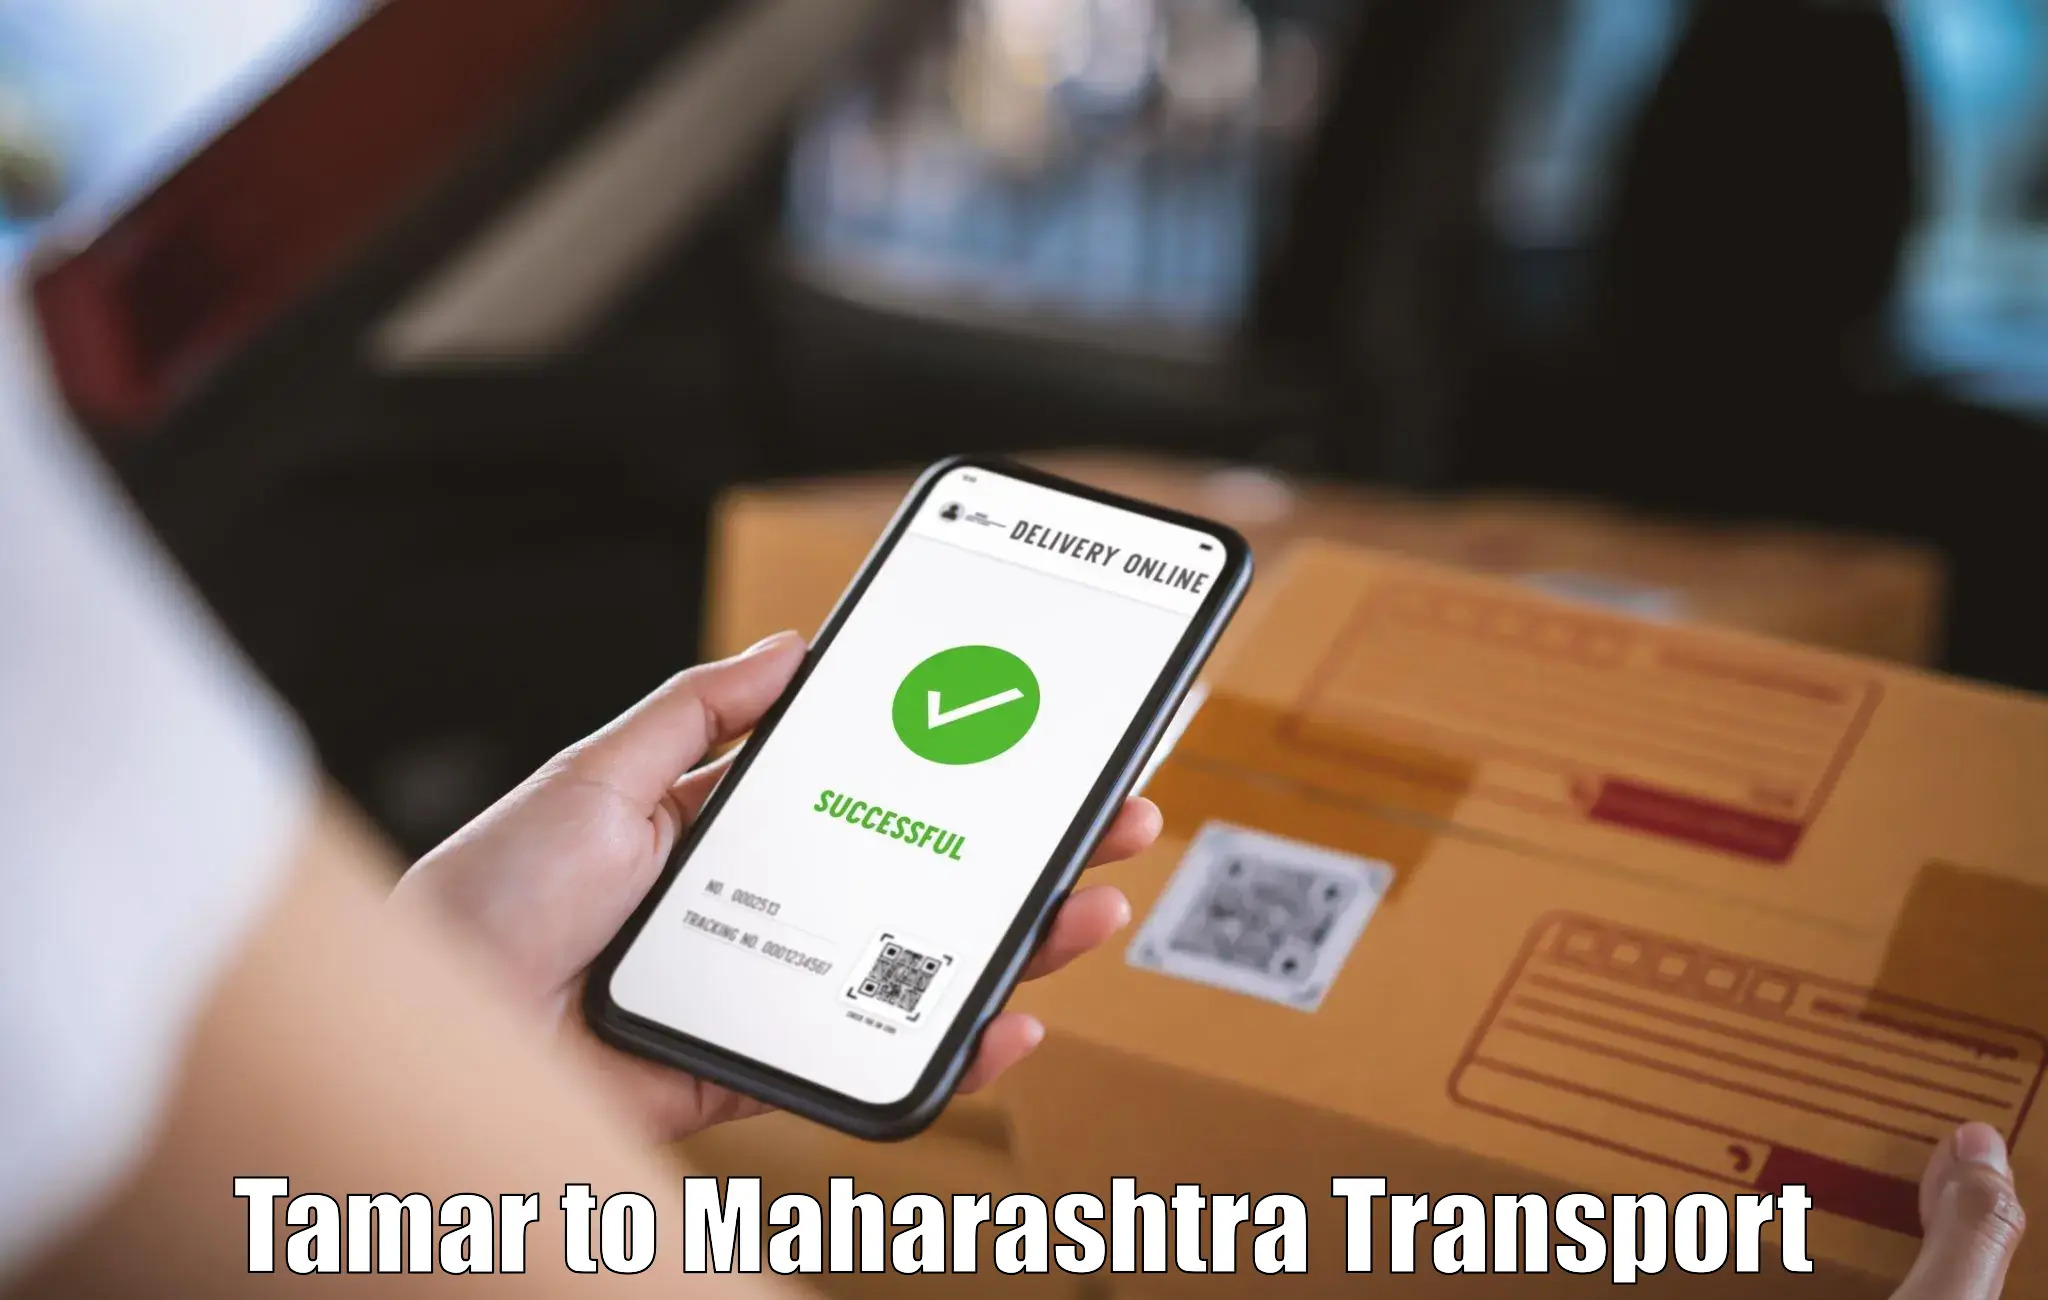 Logistics transportation services Tamar to Mumbai